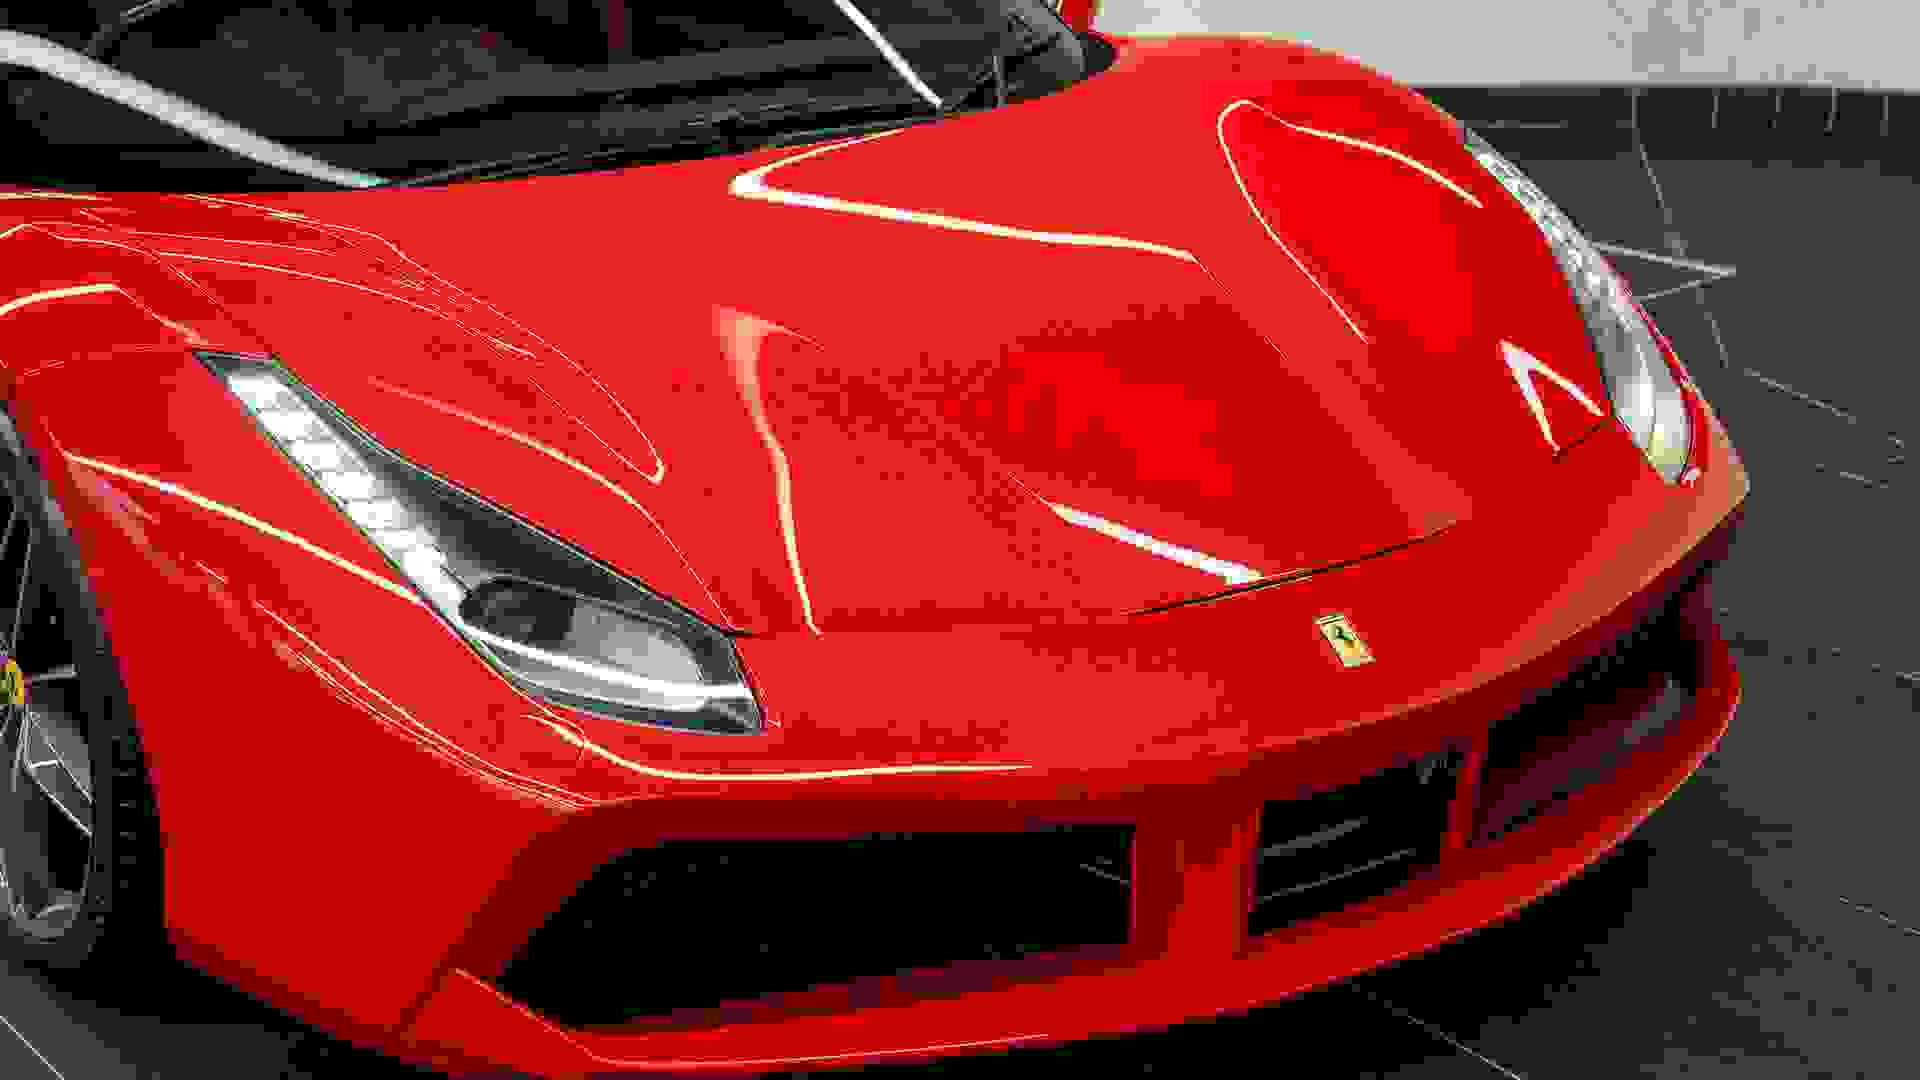 Ferrari 488 Photo 6cd61ca7-d097-4e21-bf42-63a2063b3c2a.jpg